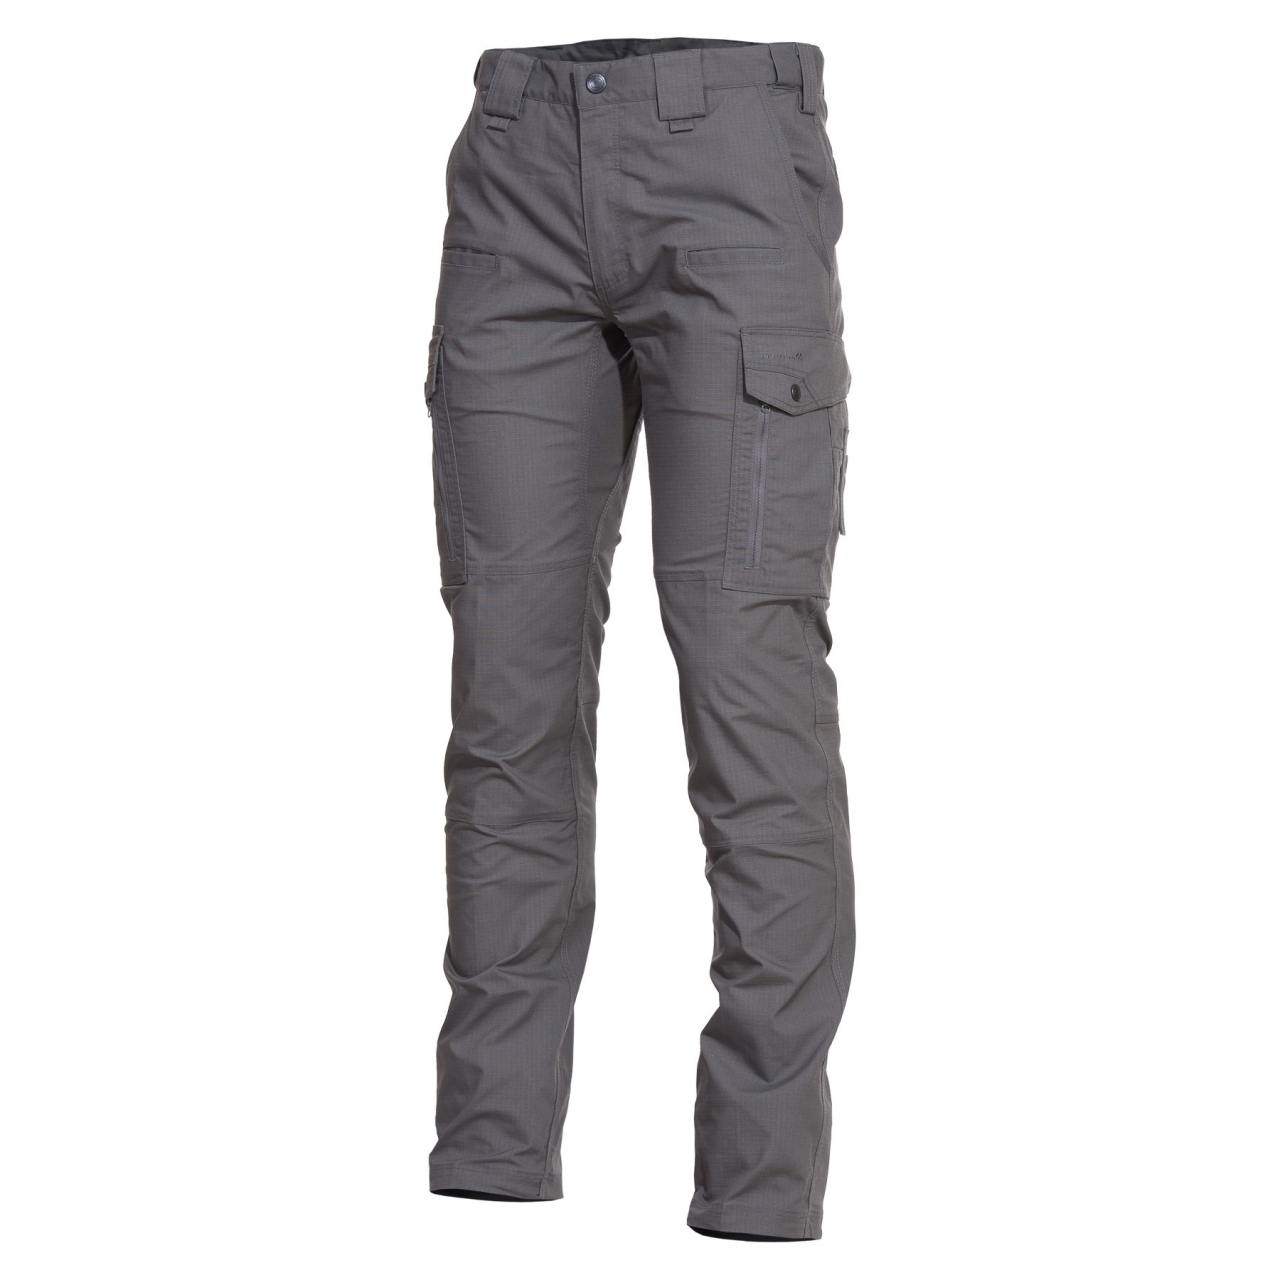 Kalhoty Pentagon Ranger 2.0 - šedé, 44 XL